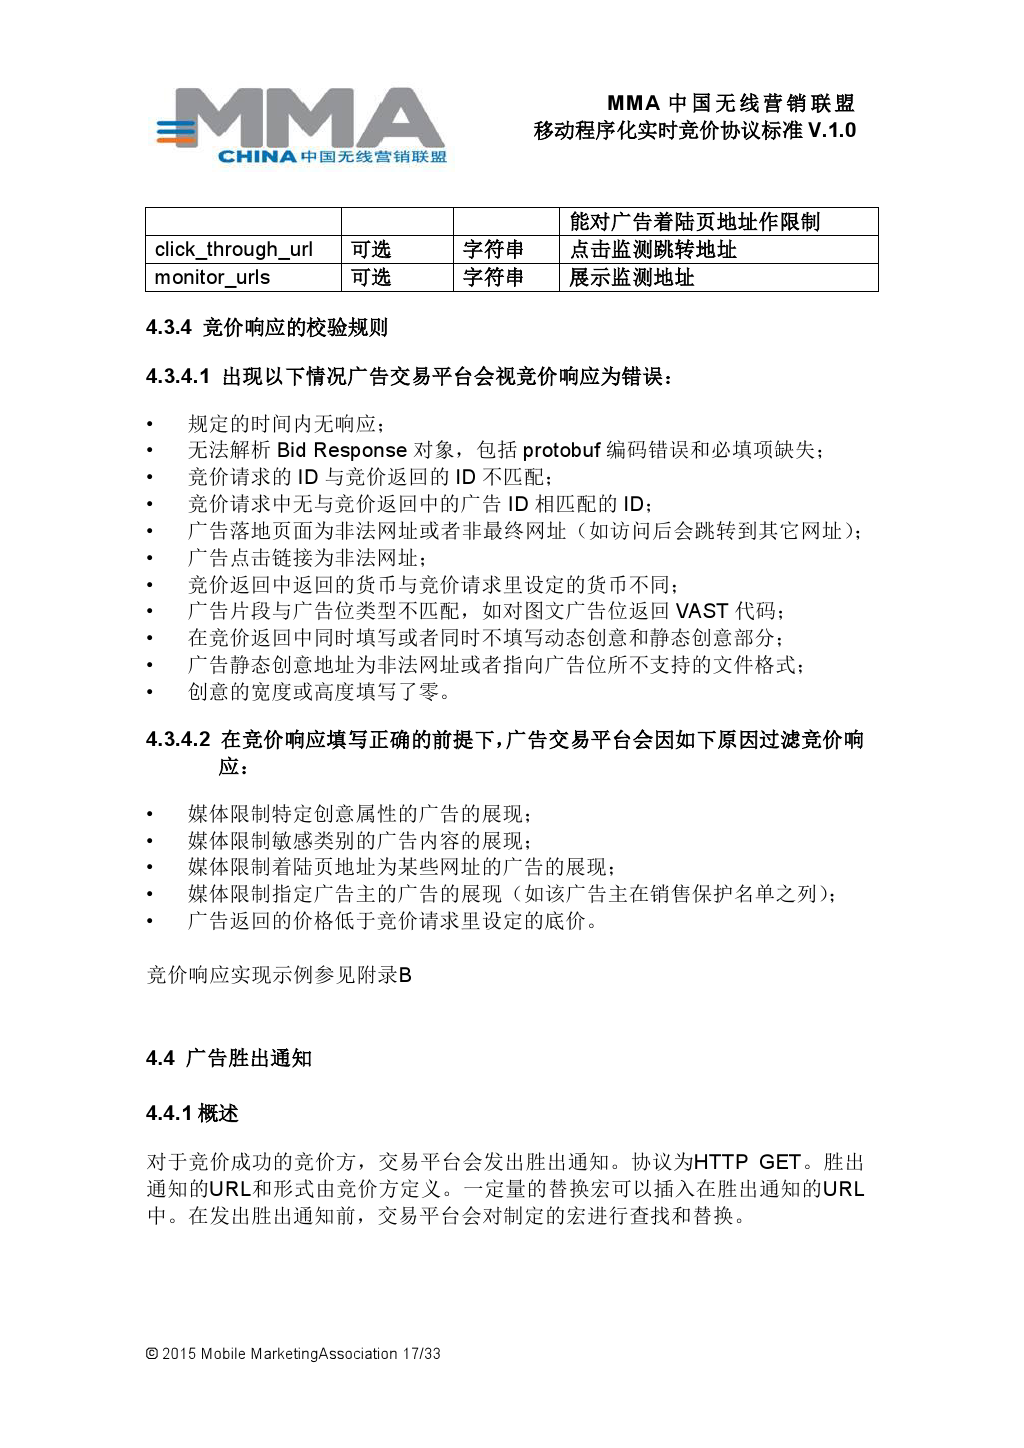 MMA中国无线营销联盟移动程序化实时竞价协议标准V.1.0_000018